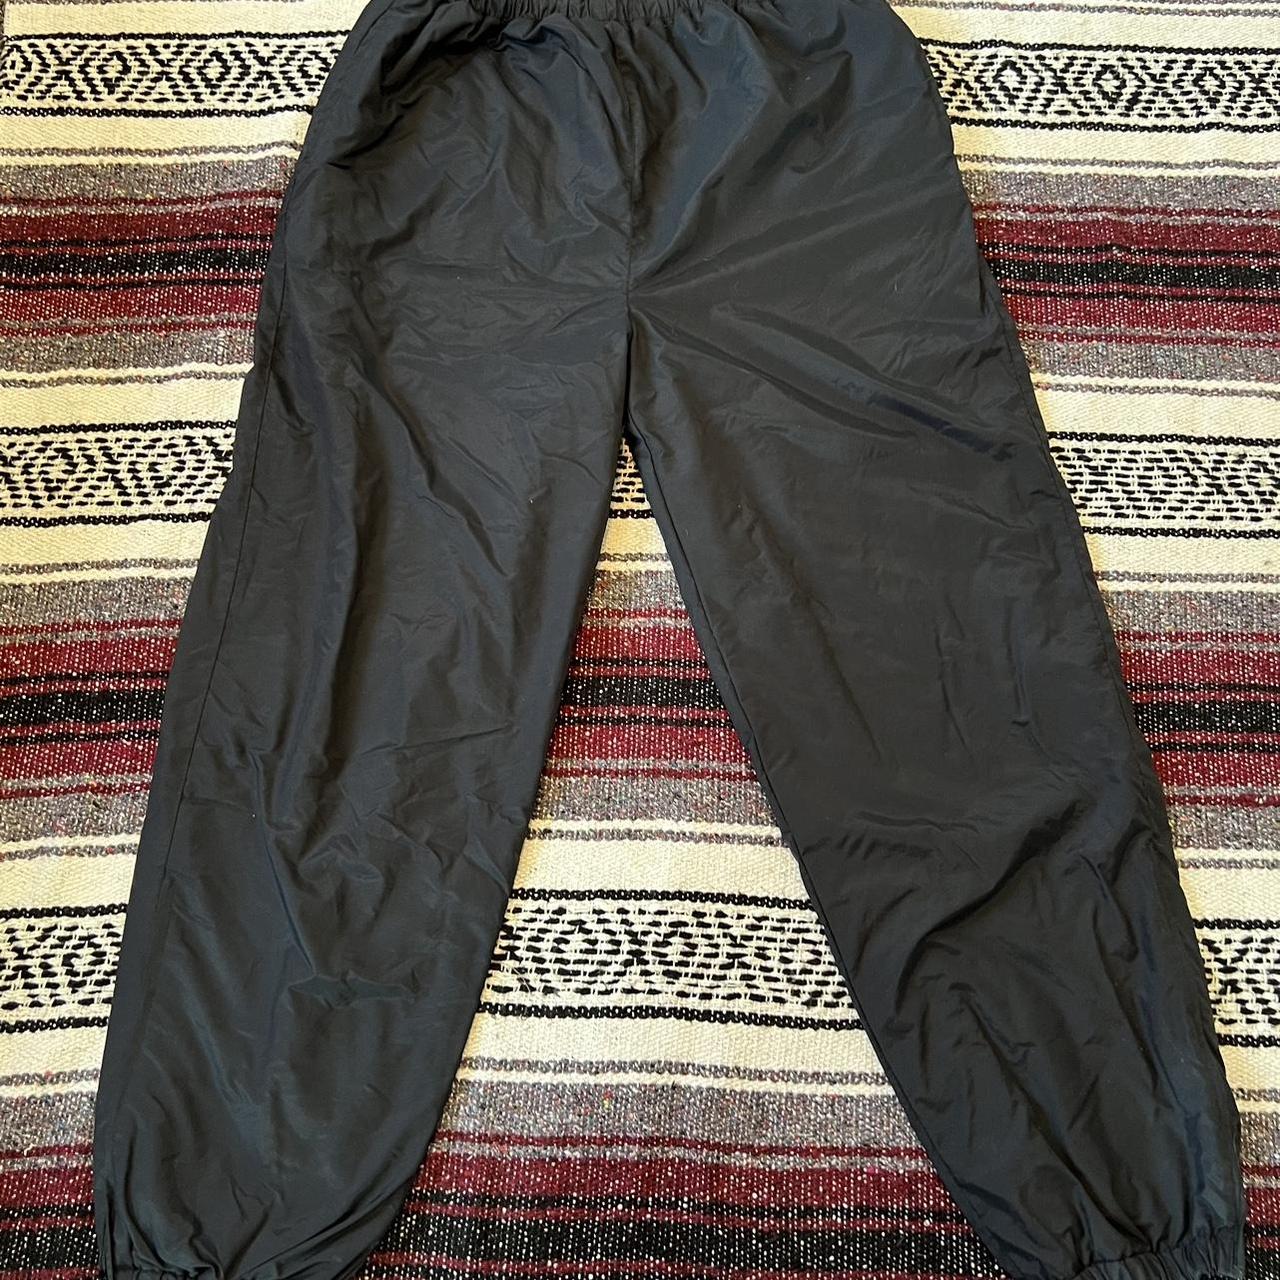 Vintage nylon parachute pants Size: L Great... - Depop